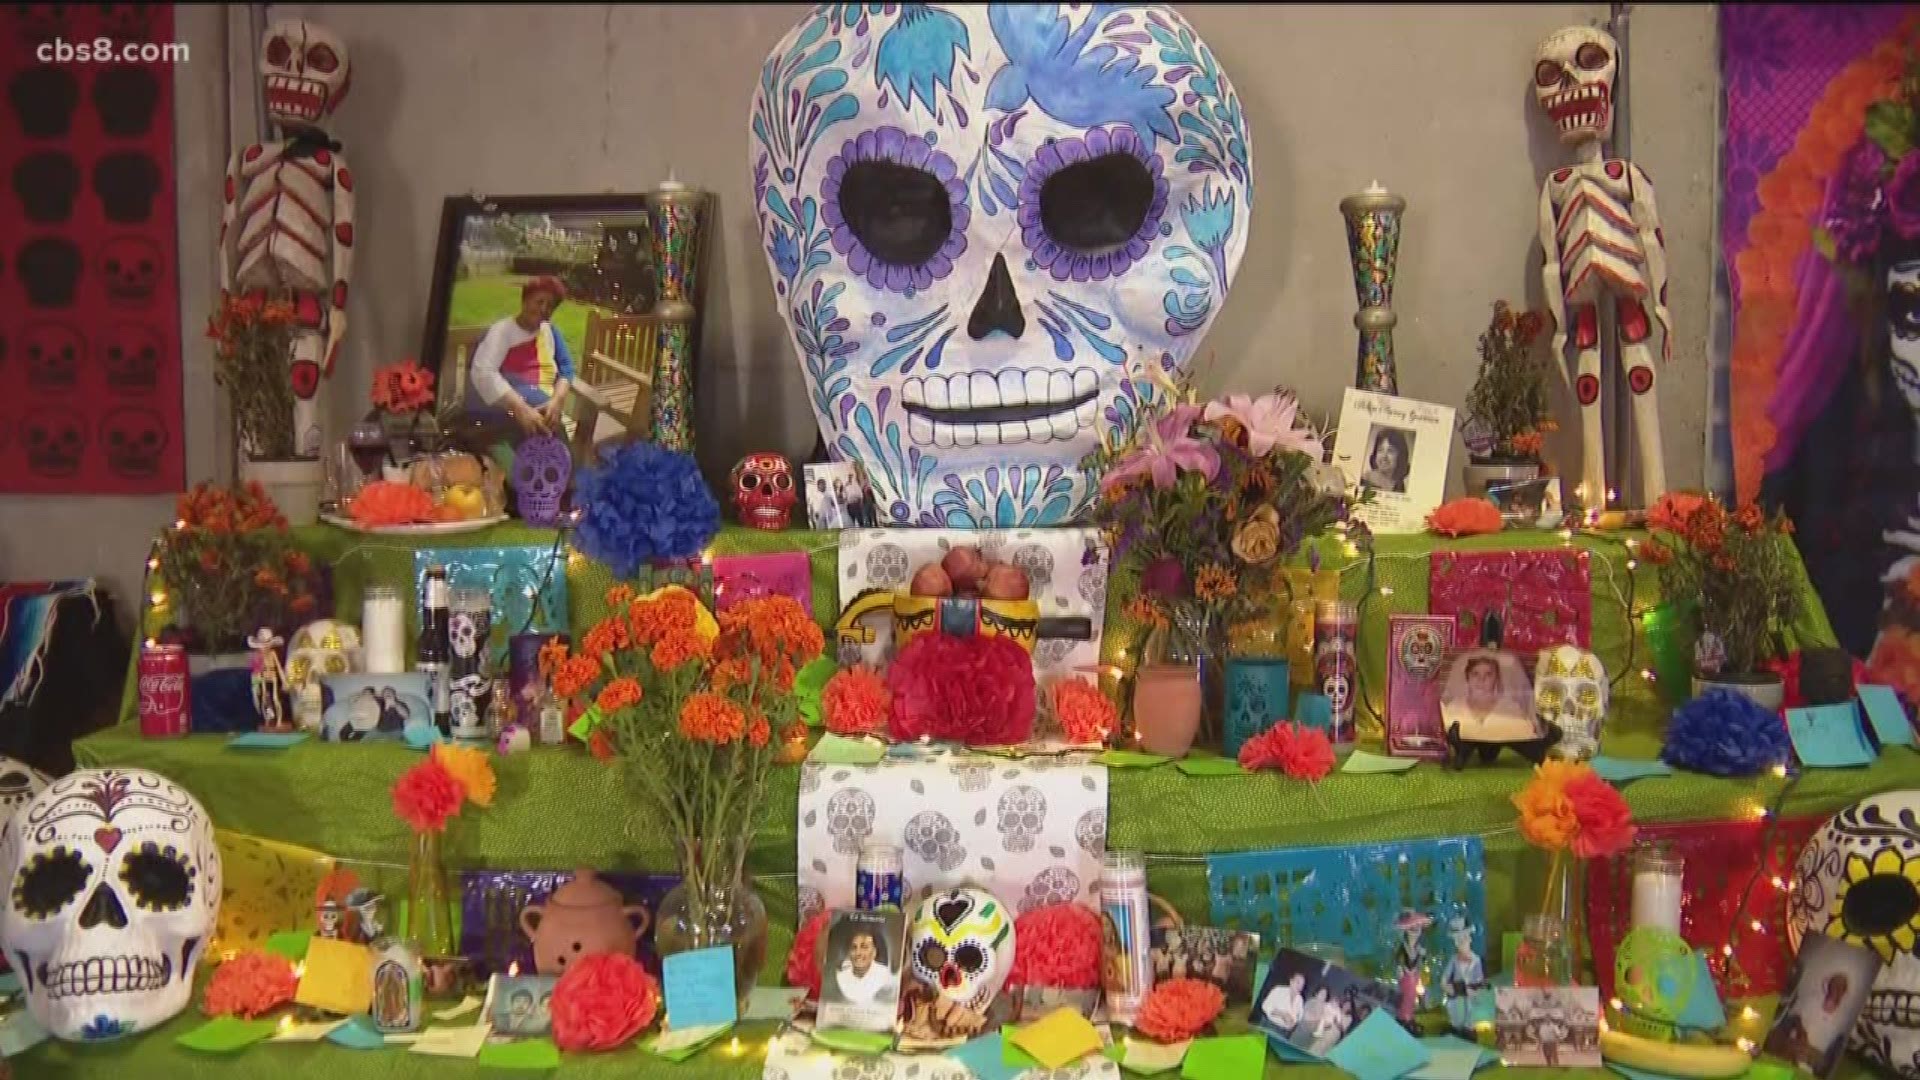 Remembering loved ones with Día de los Muertos artwork in San Diego